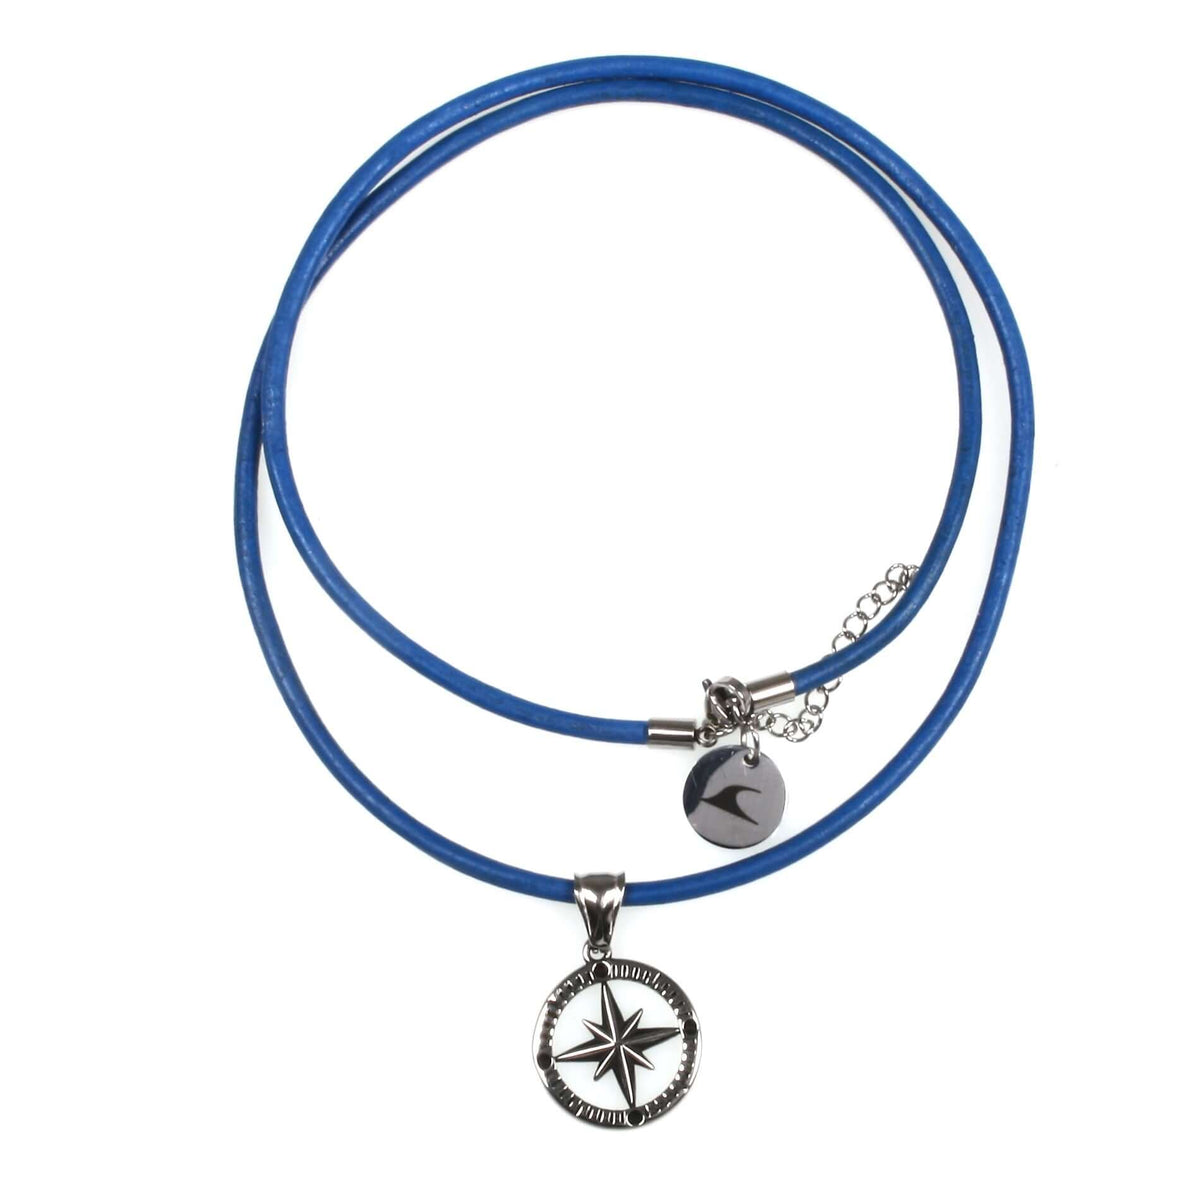 Herren-leder-halskette-damen-kompass-windrose-blau-riemen-massiv-Edelstahlverschluss-vorn-wavepirate-shop-r